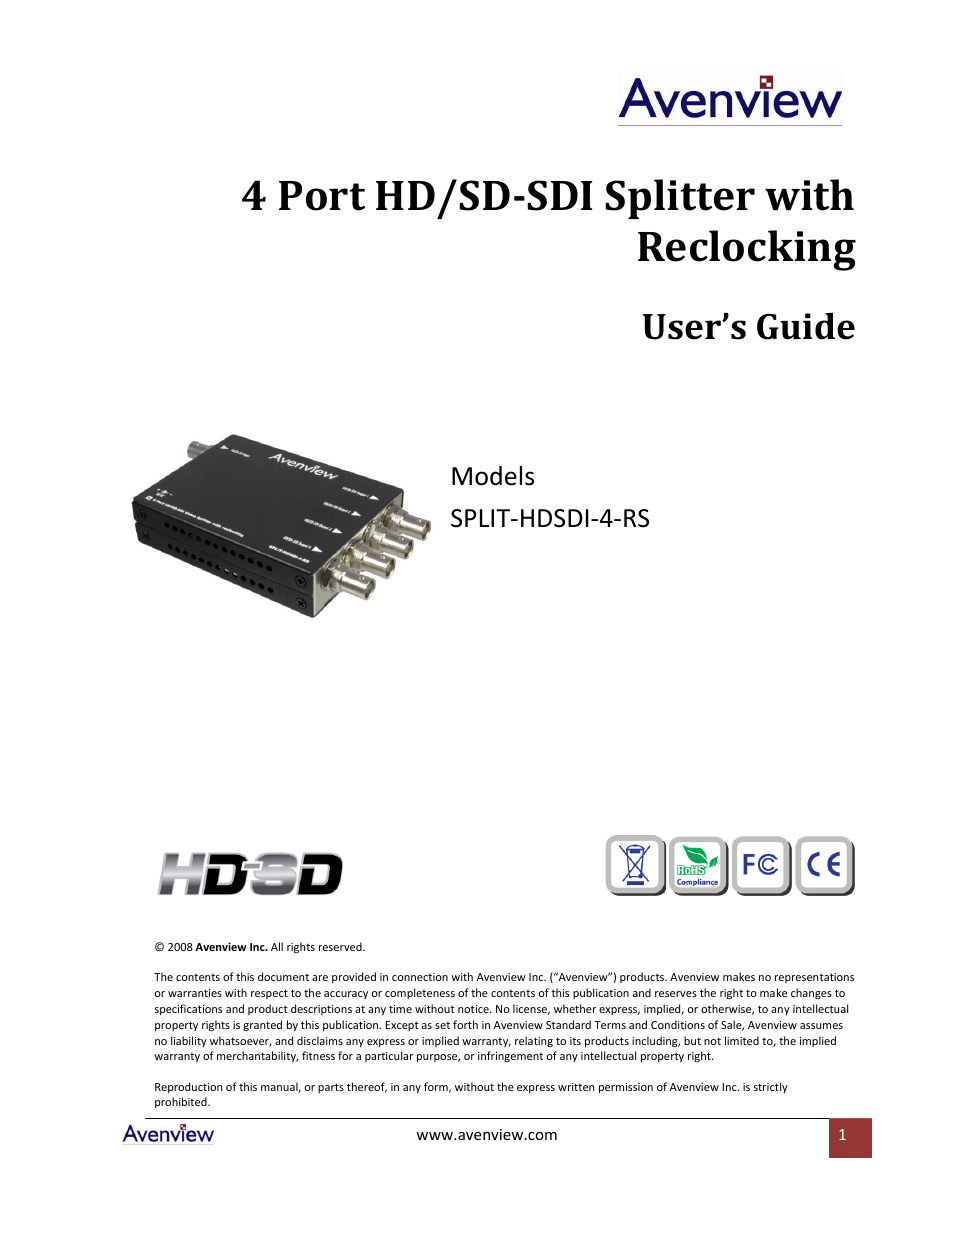 SPLIT-HDSDI-4-RS